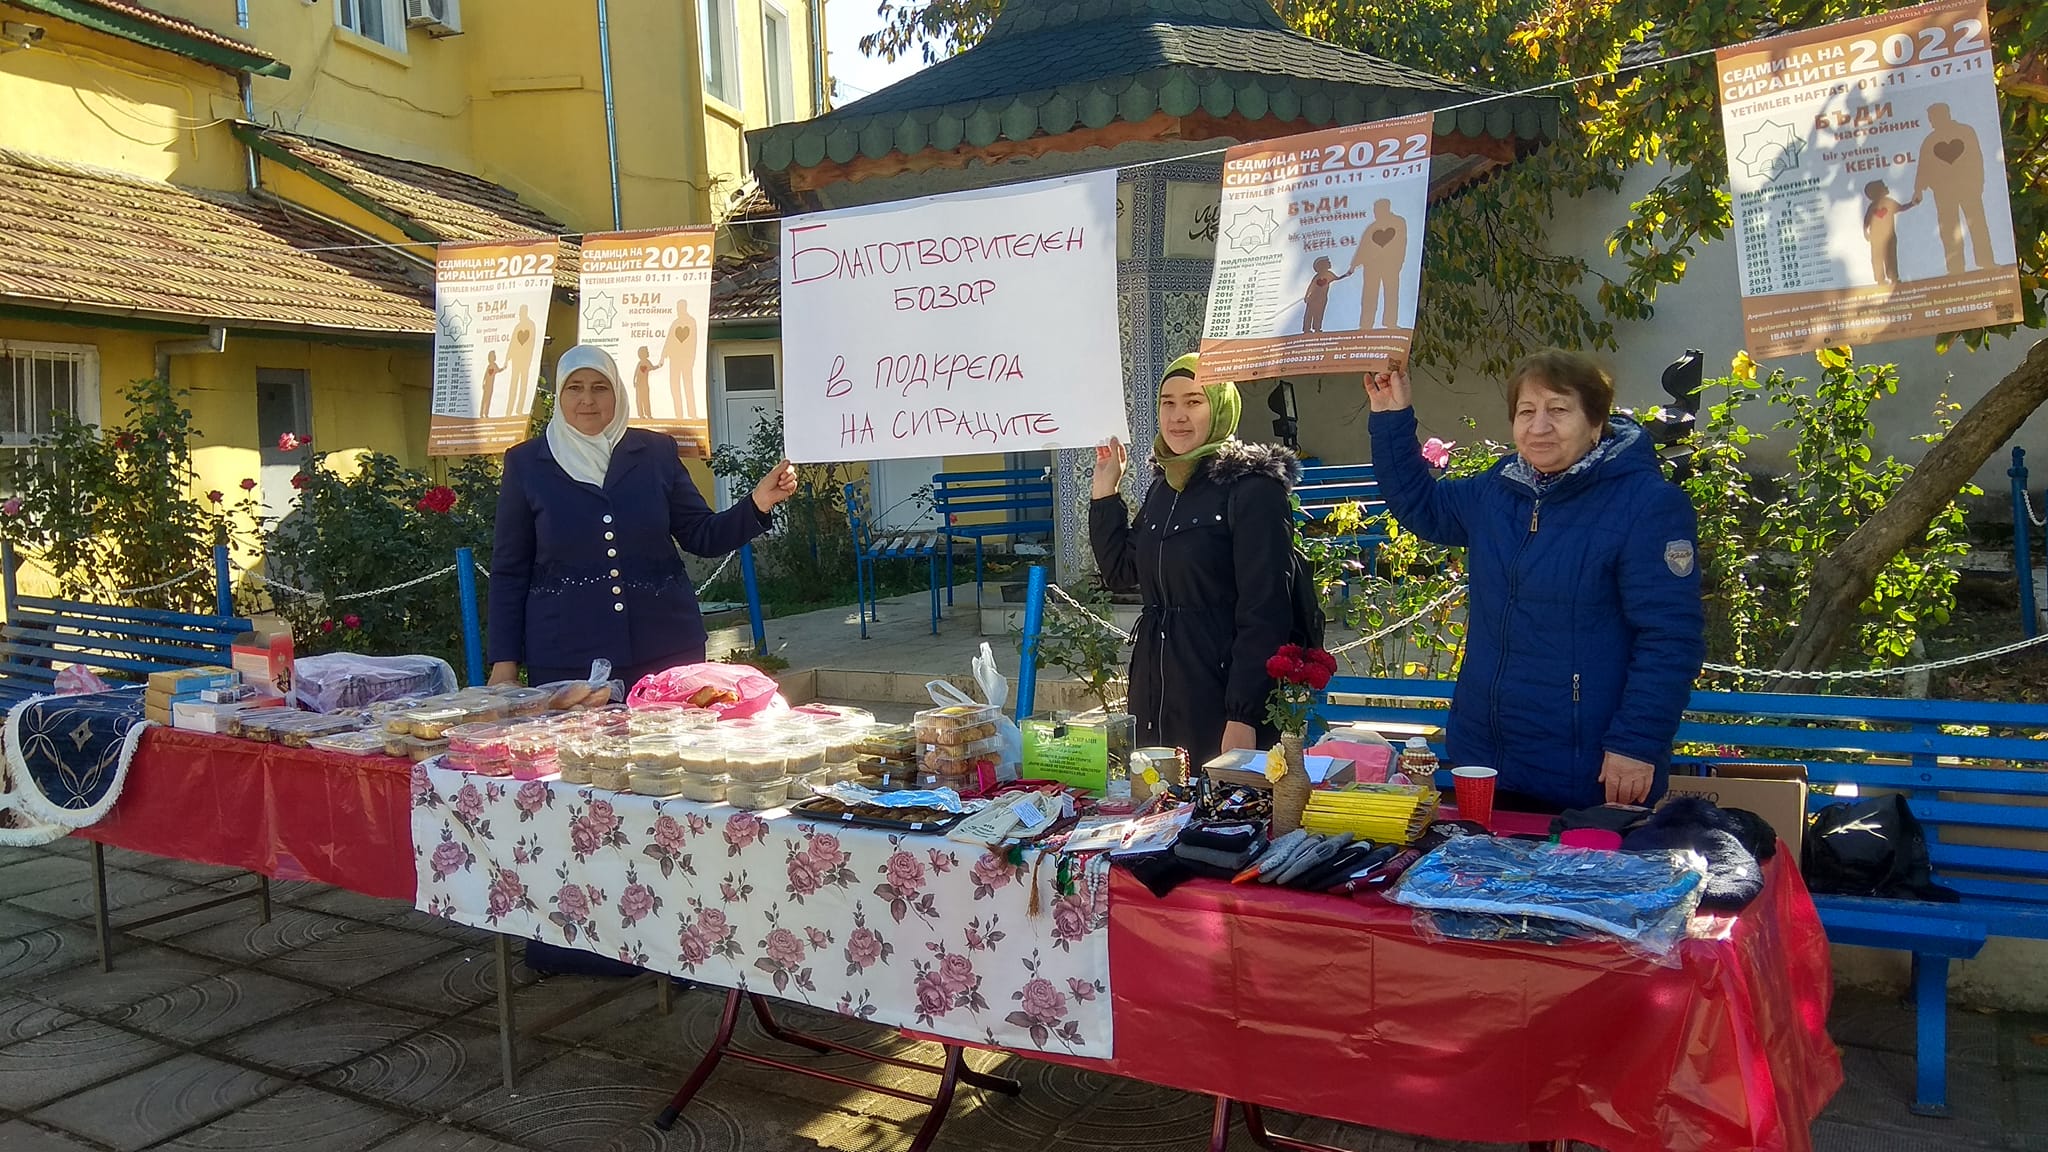 خلال حملة "أسبوع اليتيم" تنظم مساجد بلغاريا أسواق خيرية تخصص أرباحها لصالح الأيتام